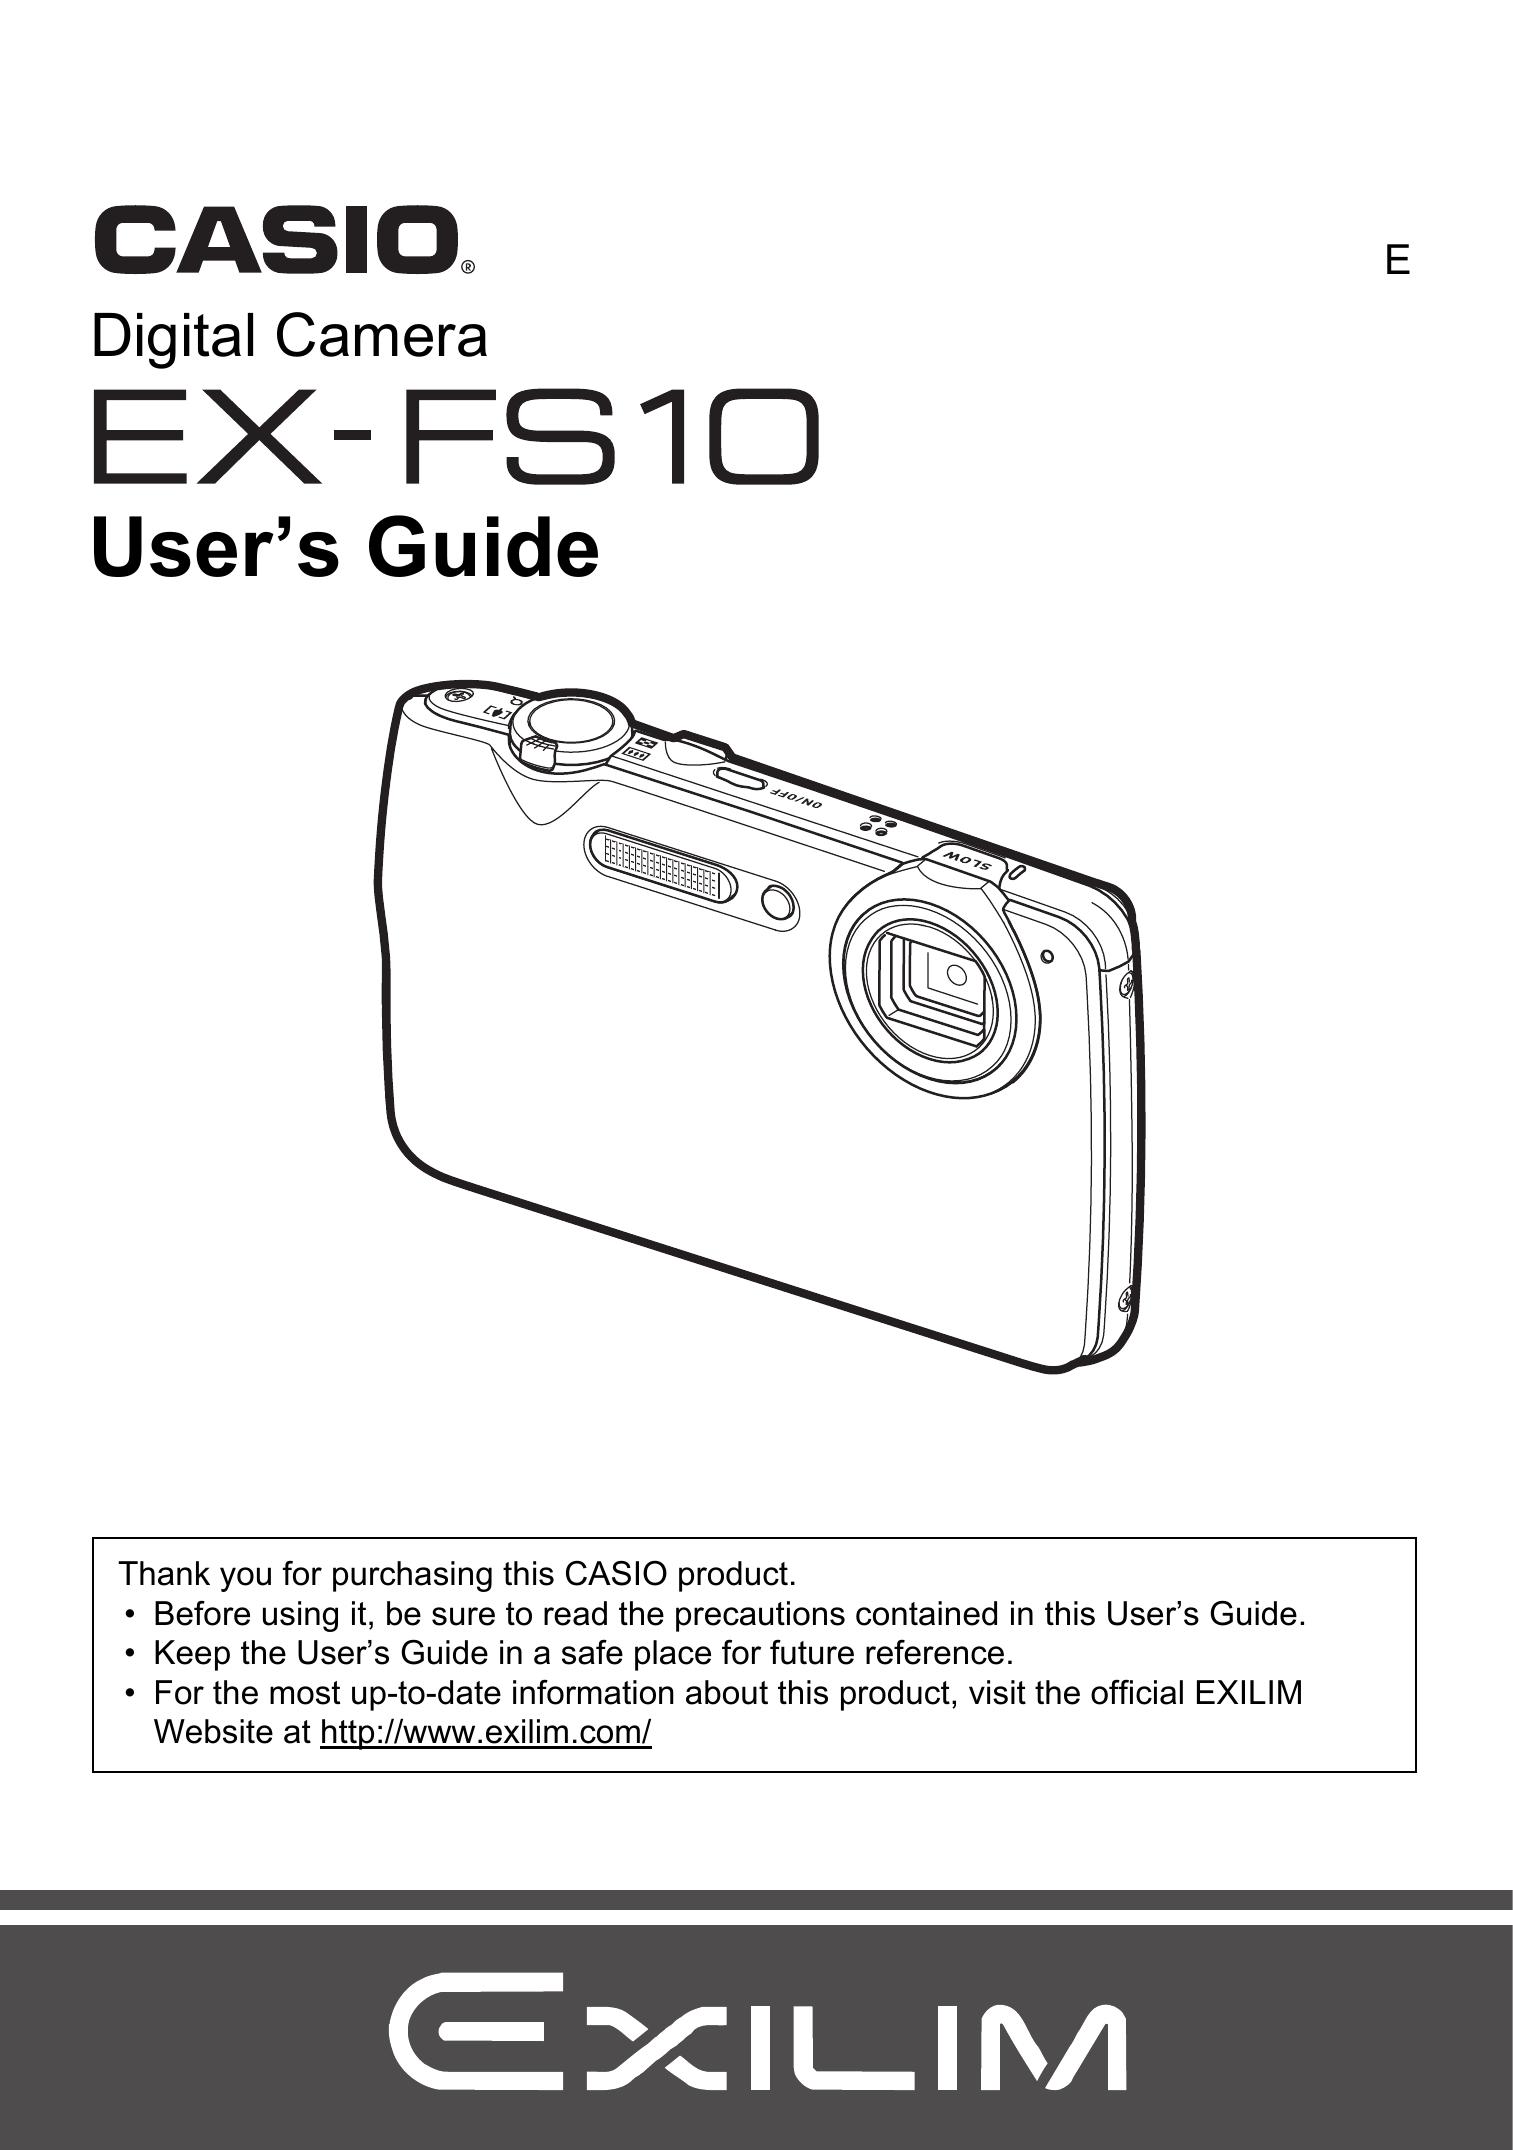 Casio EX-FS10 Digital Camera User Manual